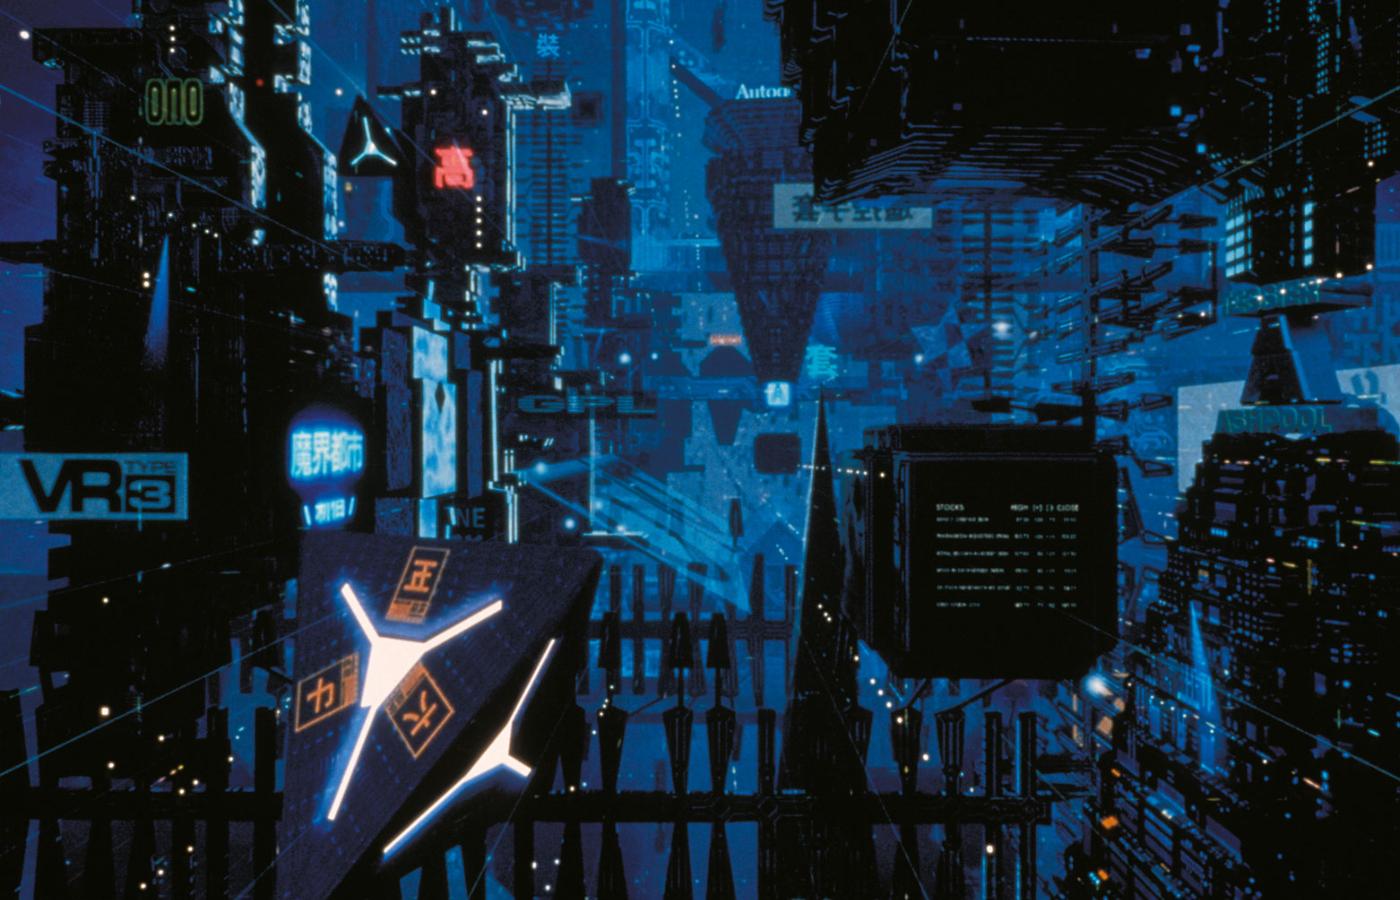 Kadr z filmu „Johnny Mnemonic”, nakręconego
na podstawie cyberpunkowego opowiadania
Williama Gibsona.